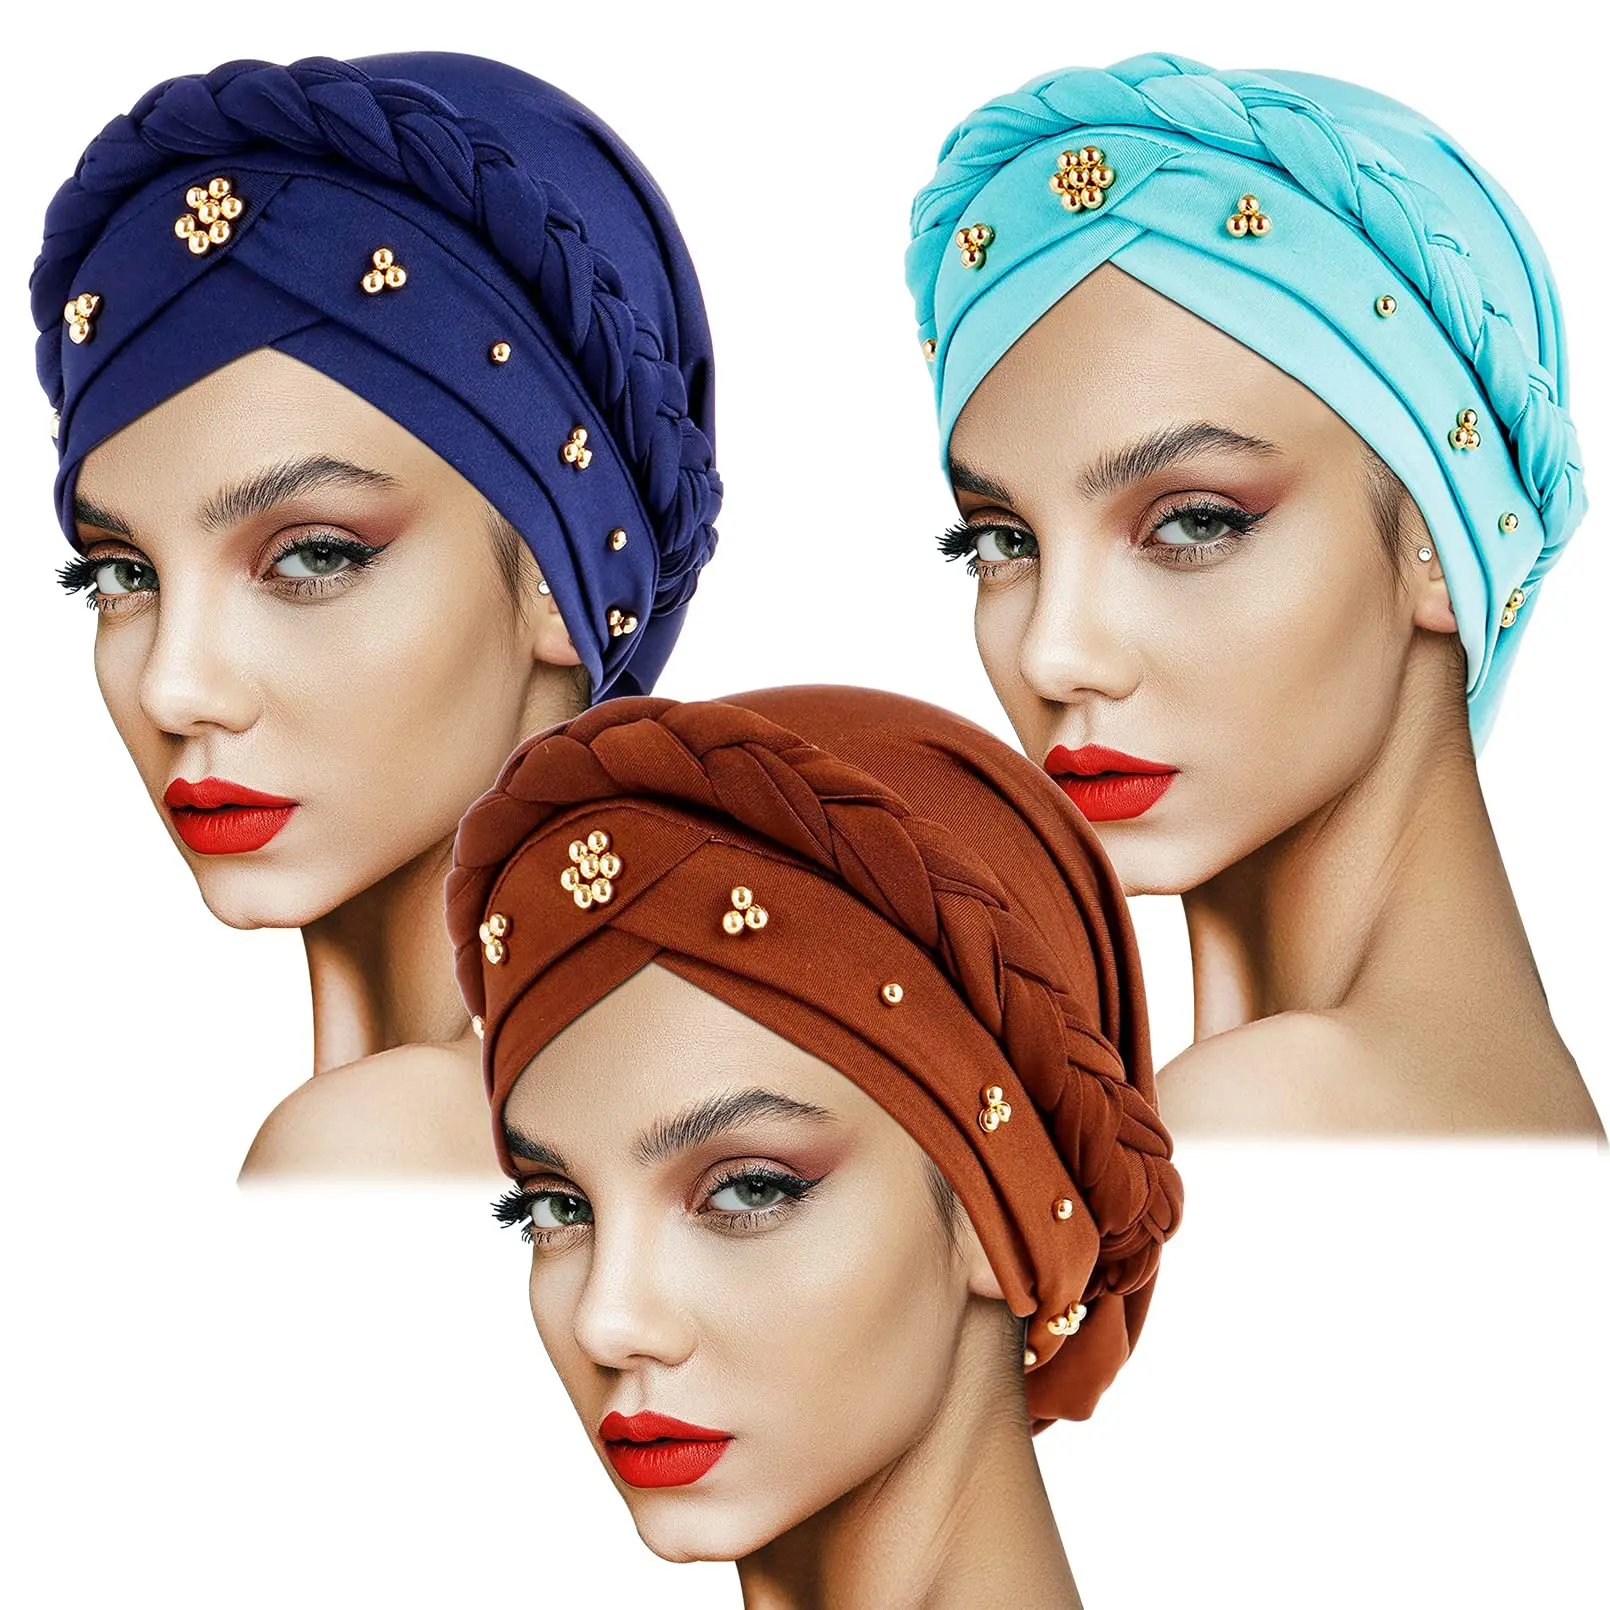 

India Muslim Women Hijab Hat Cancer Chemo Cap Braid Beads Turban Headscarf Lady Beanie Bonnet Hair Loss Cover Islamic Head Wrap